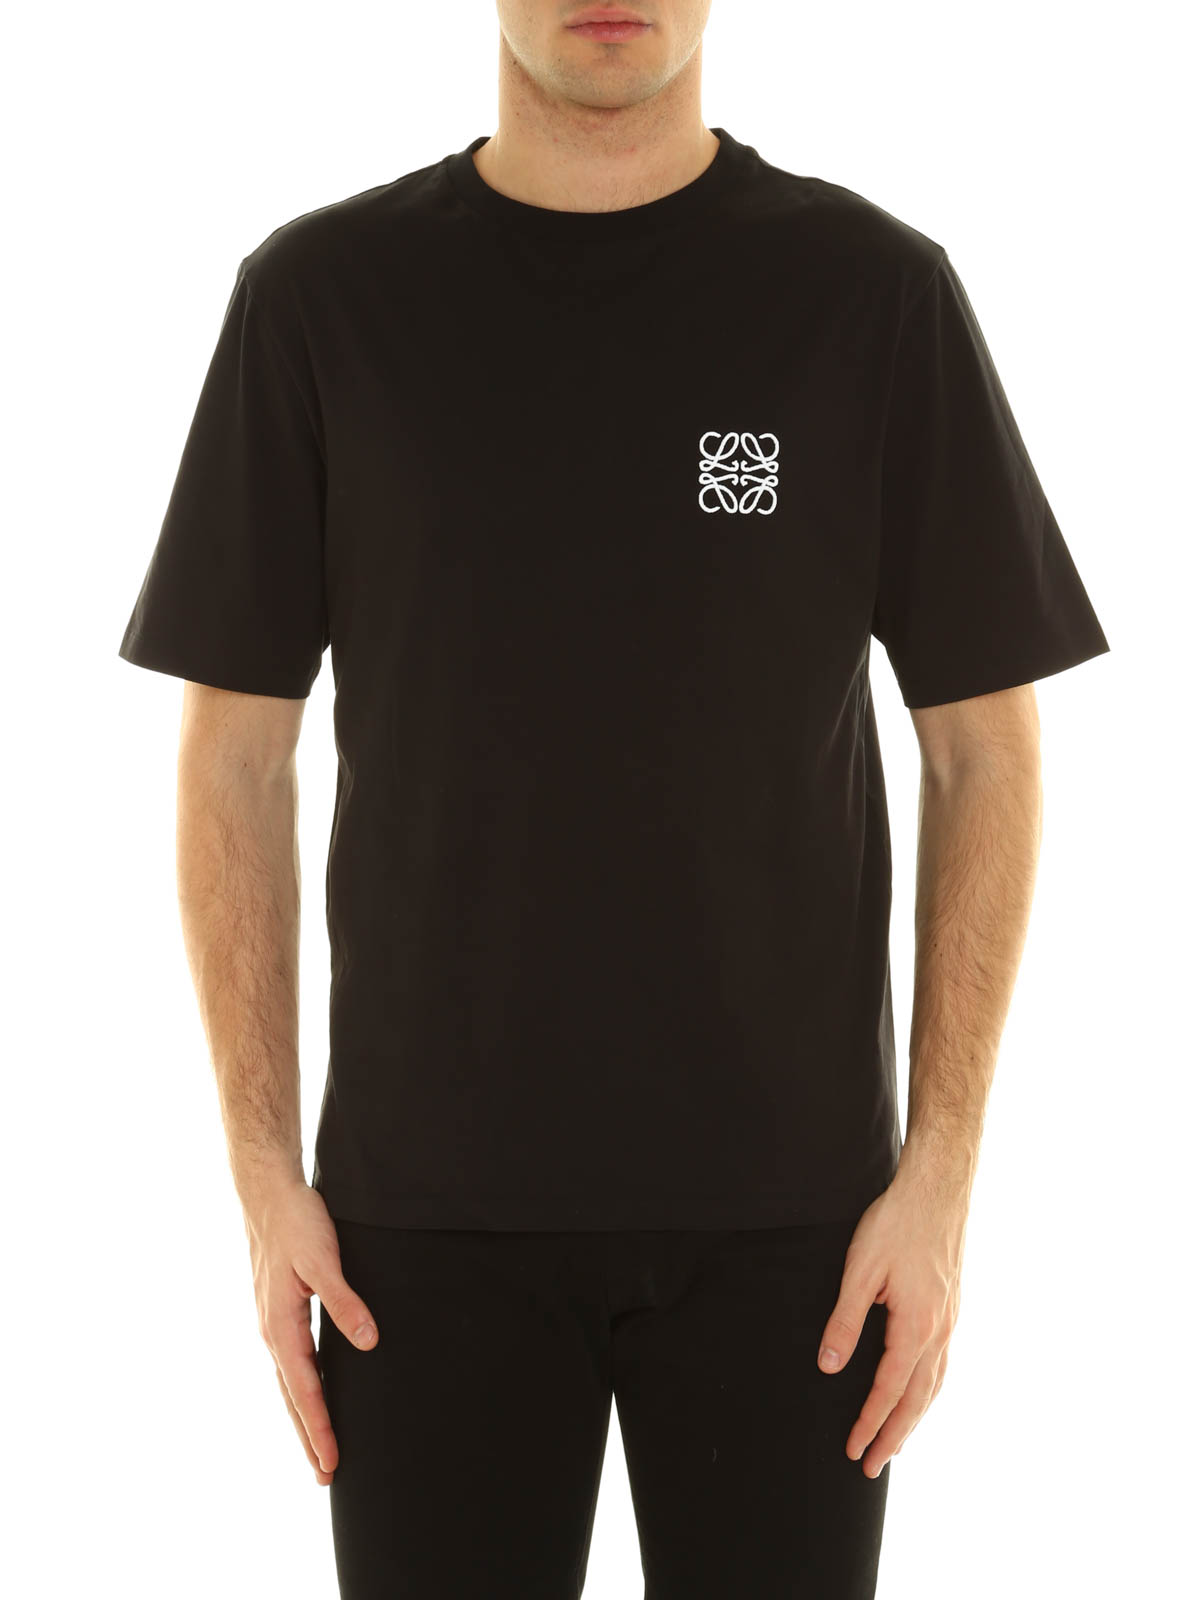 Tシャツ Loewe - Tシャツ メンズ - 黒 - H2179680CR1100